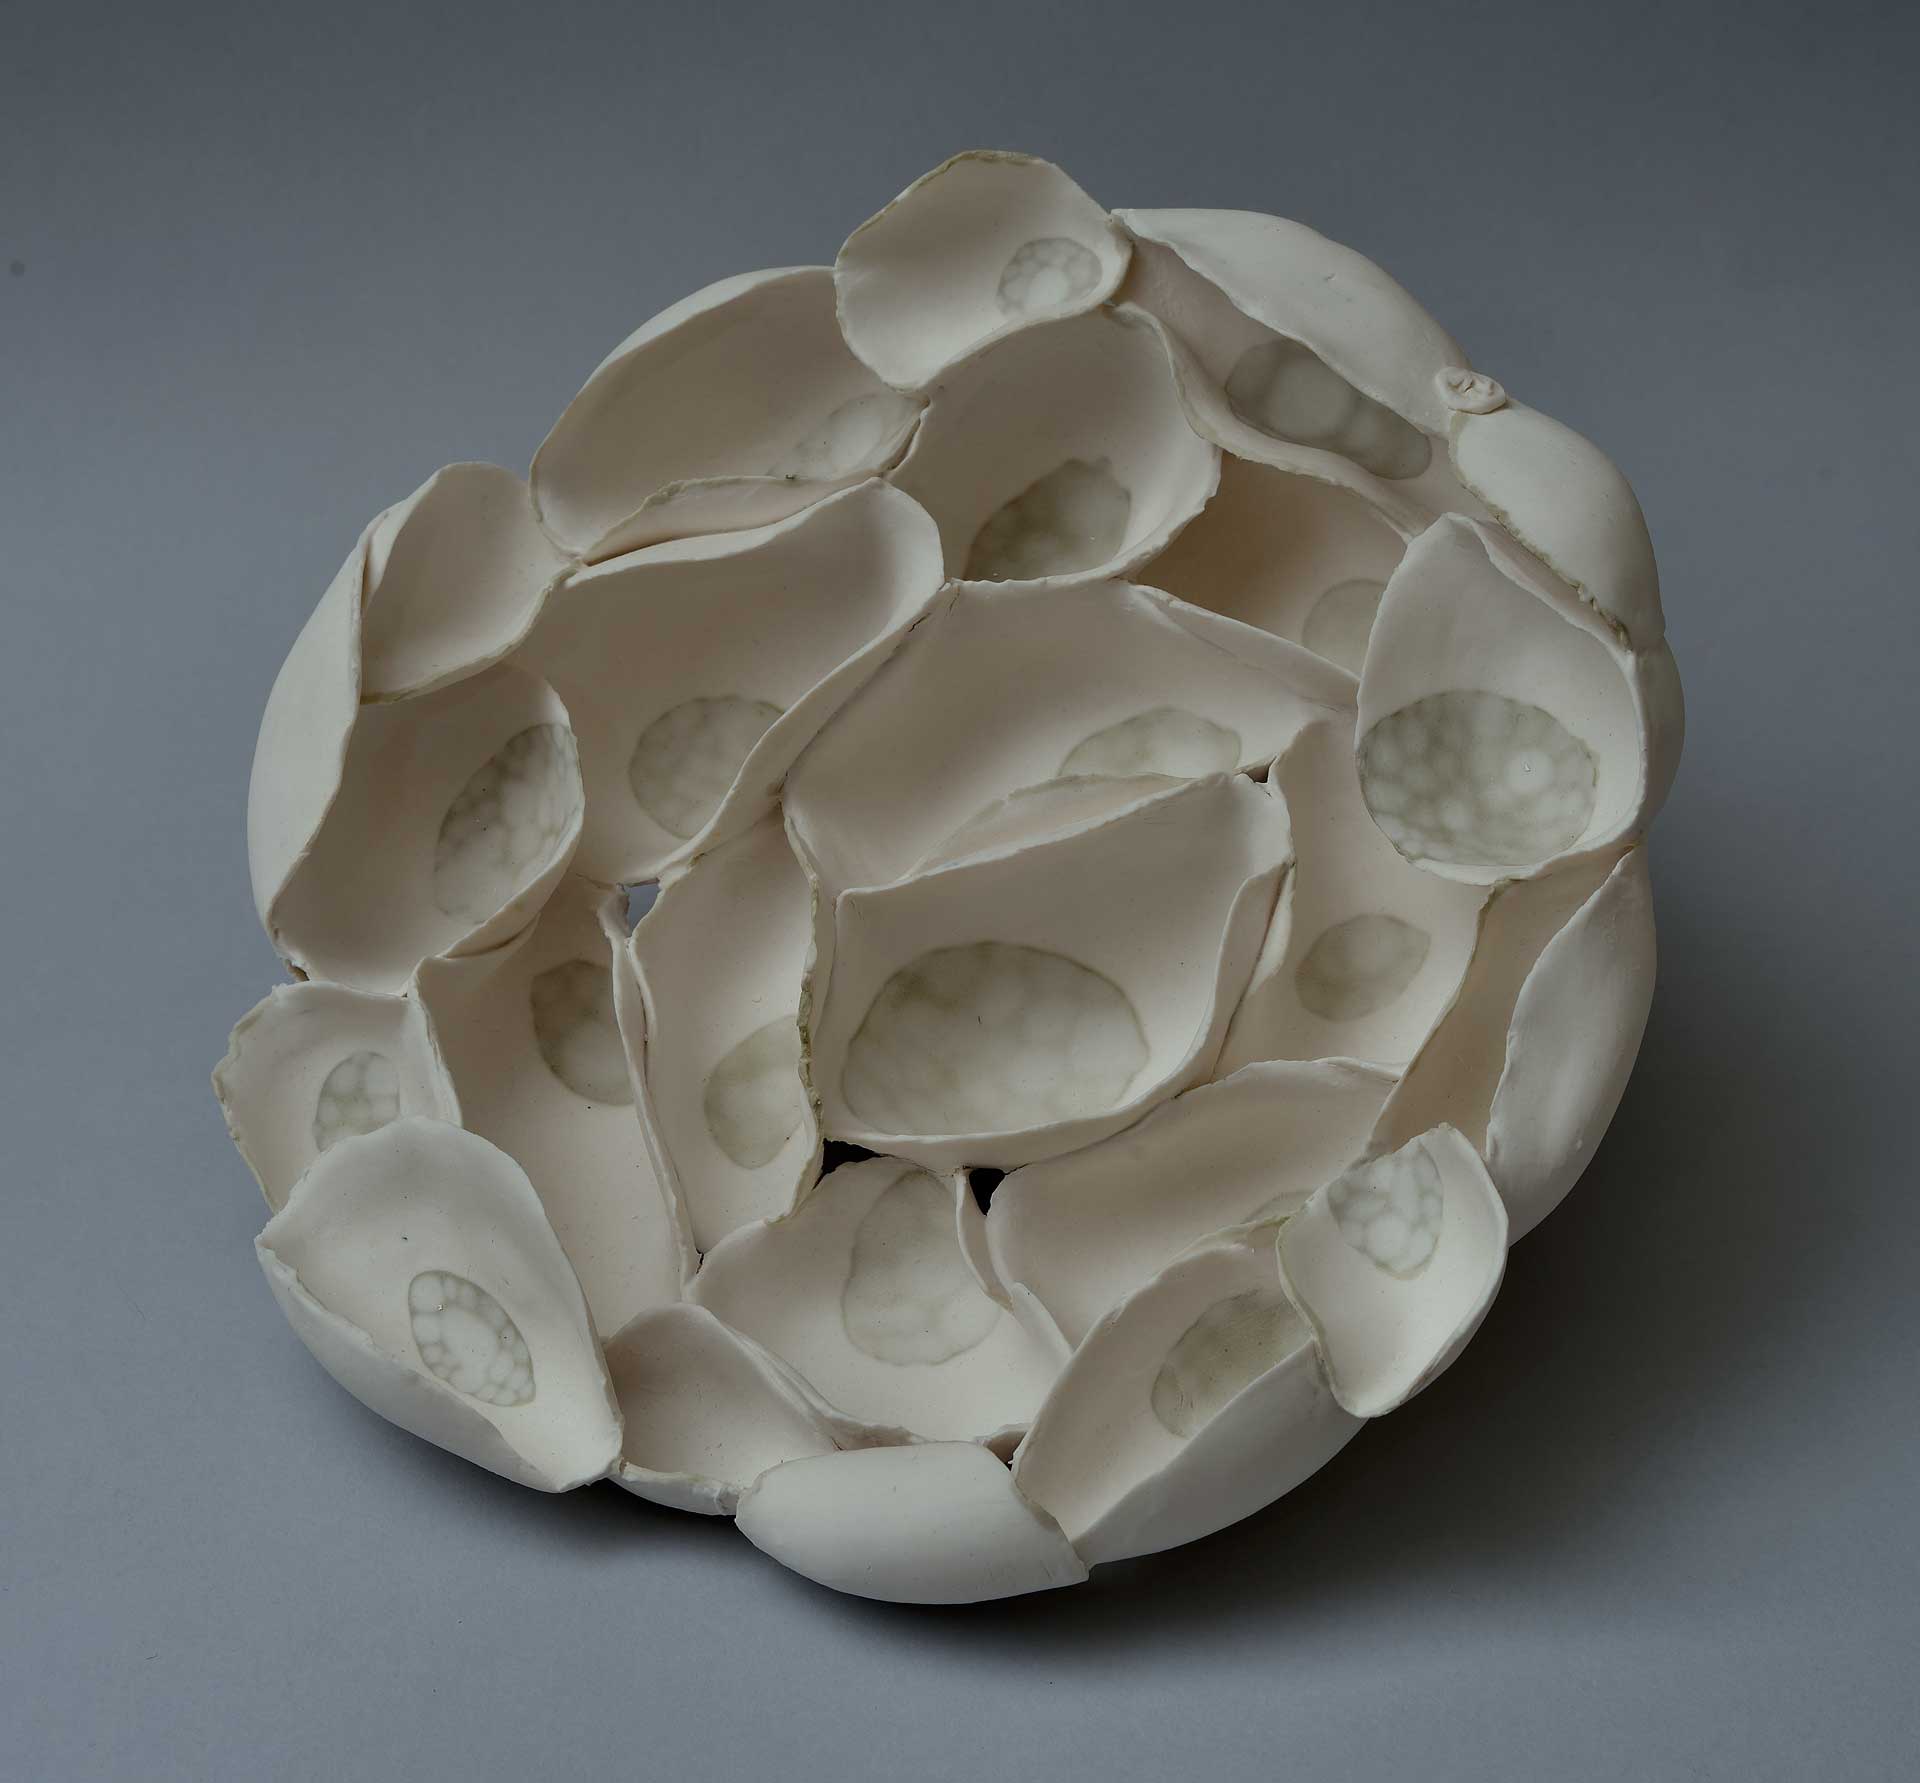 seeds - porcelain, metallic salts - 2015